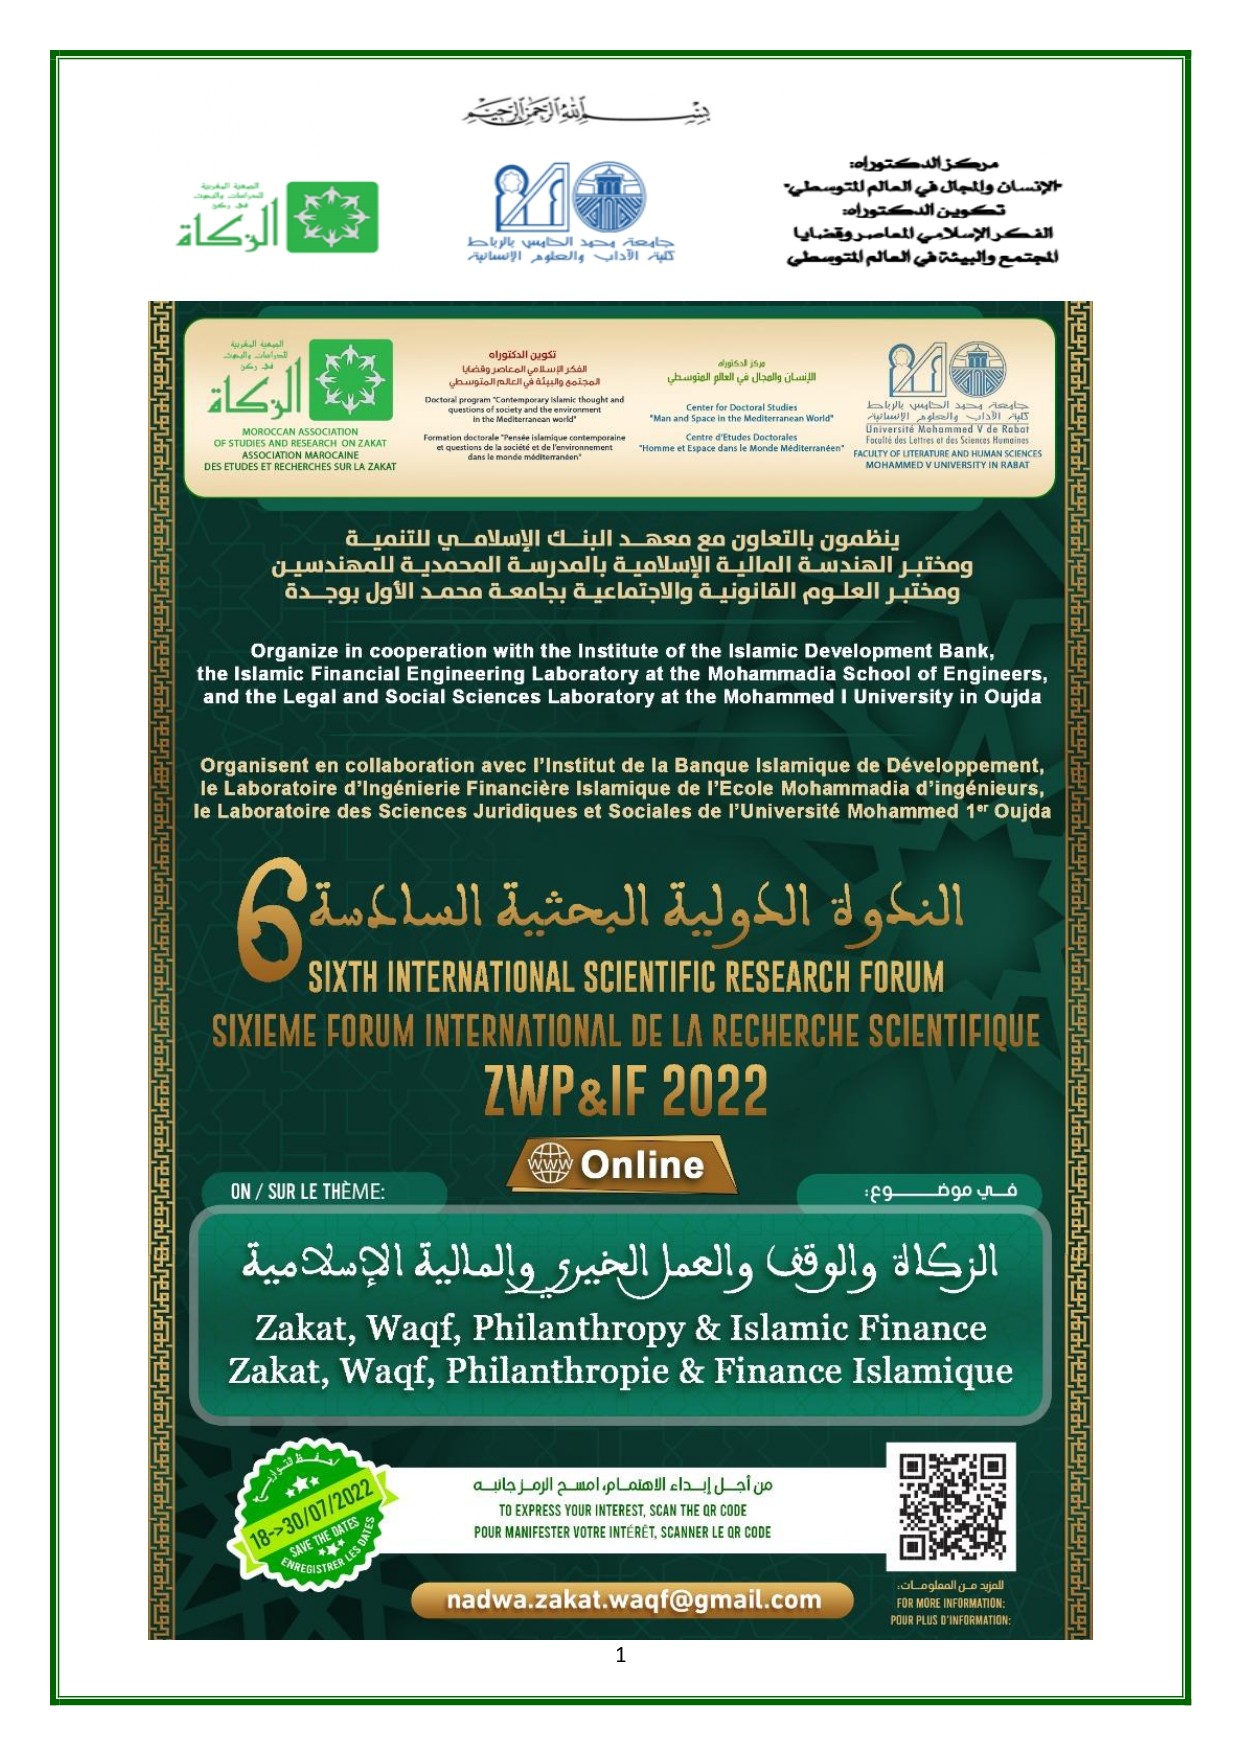 الندوة البحثية الدولية السادسة في موضوع: الزكاة والوقف والعمل الخيري والمالية الإسلامية